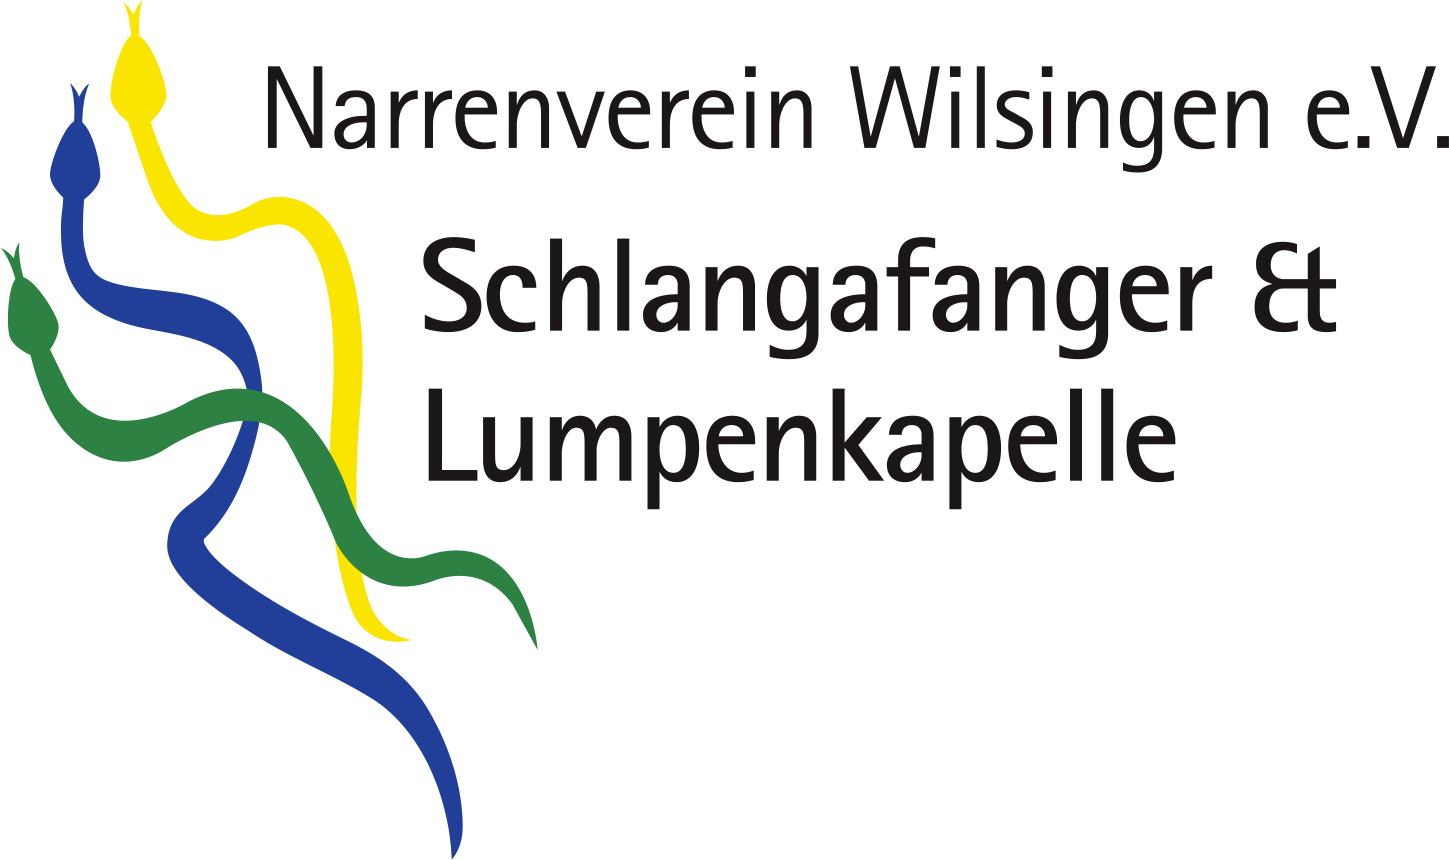 Narrenverein Wilsingen e.V.